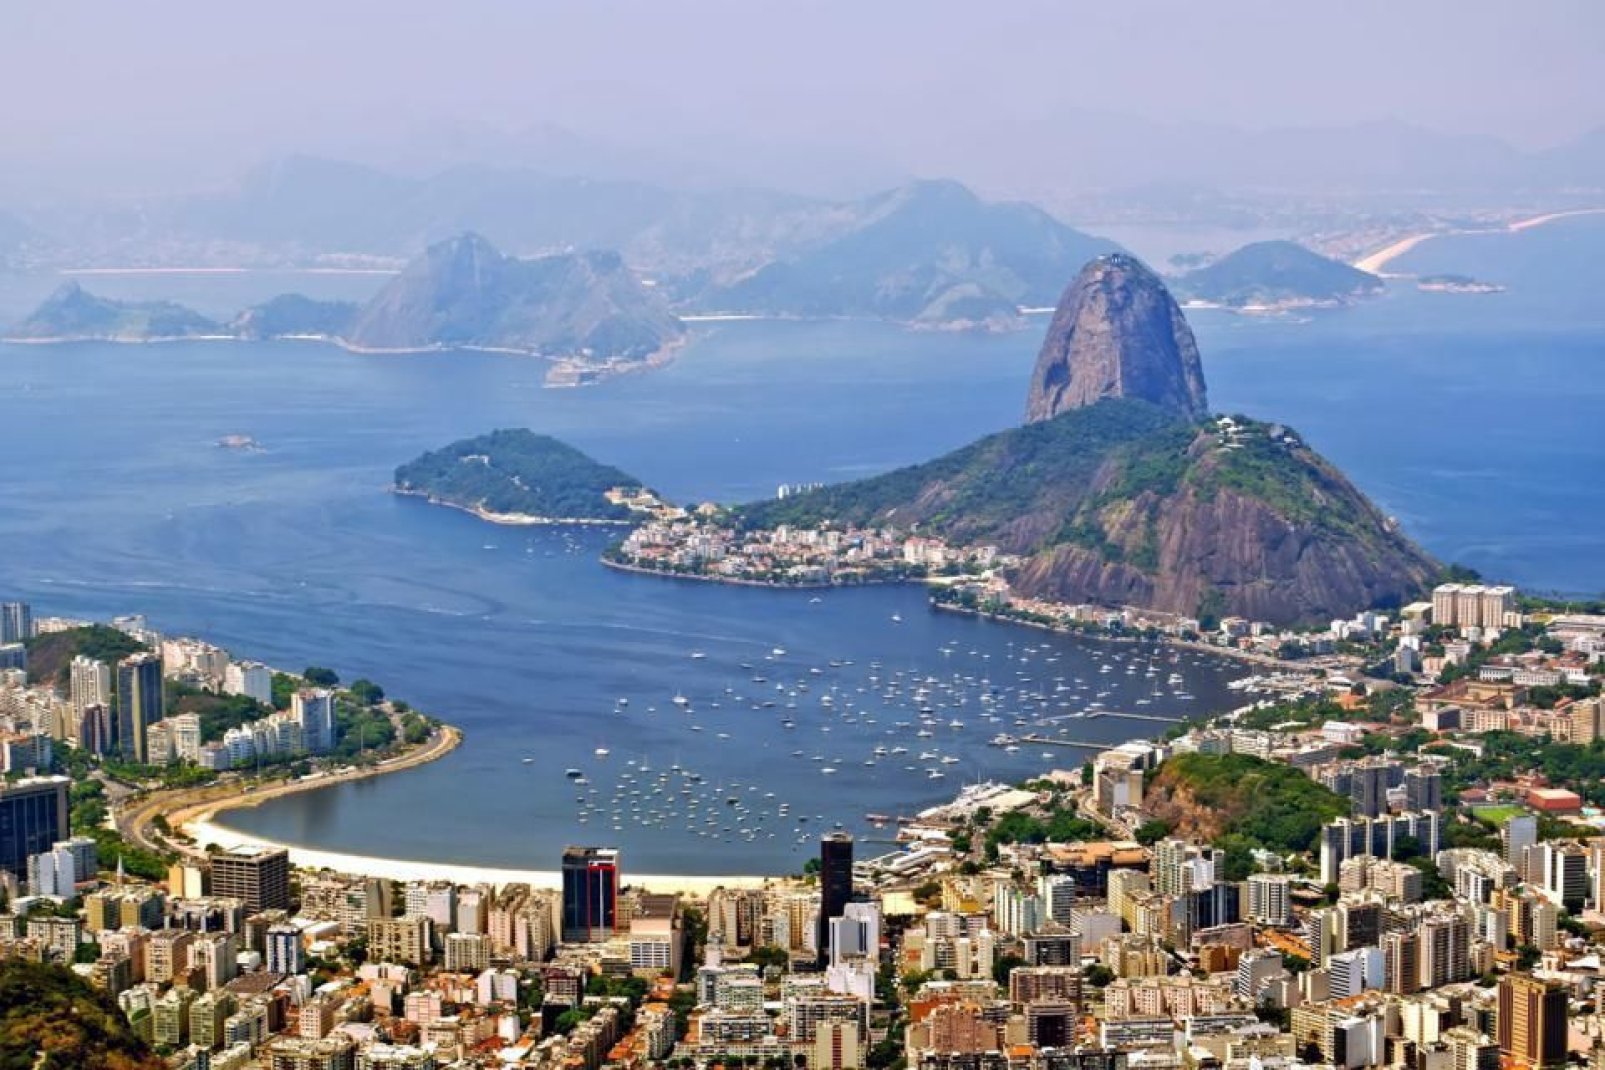 Superba veduta sul Pan di Zucchero, uno dei simboli di Rio